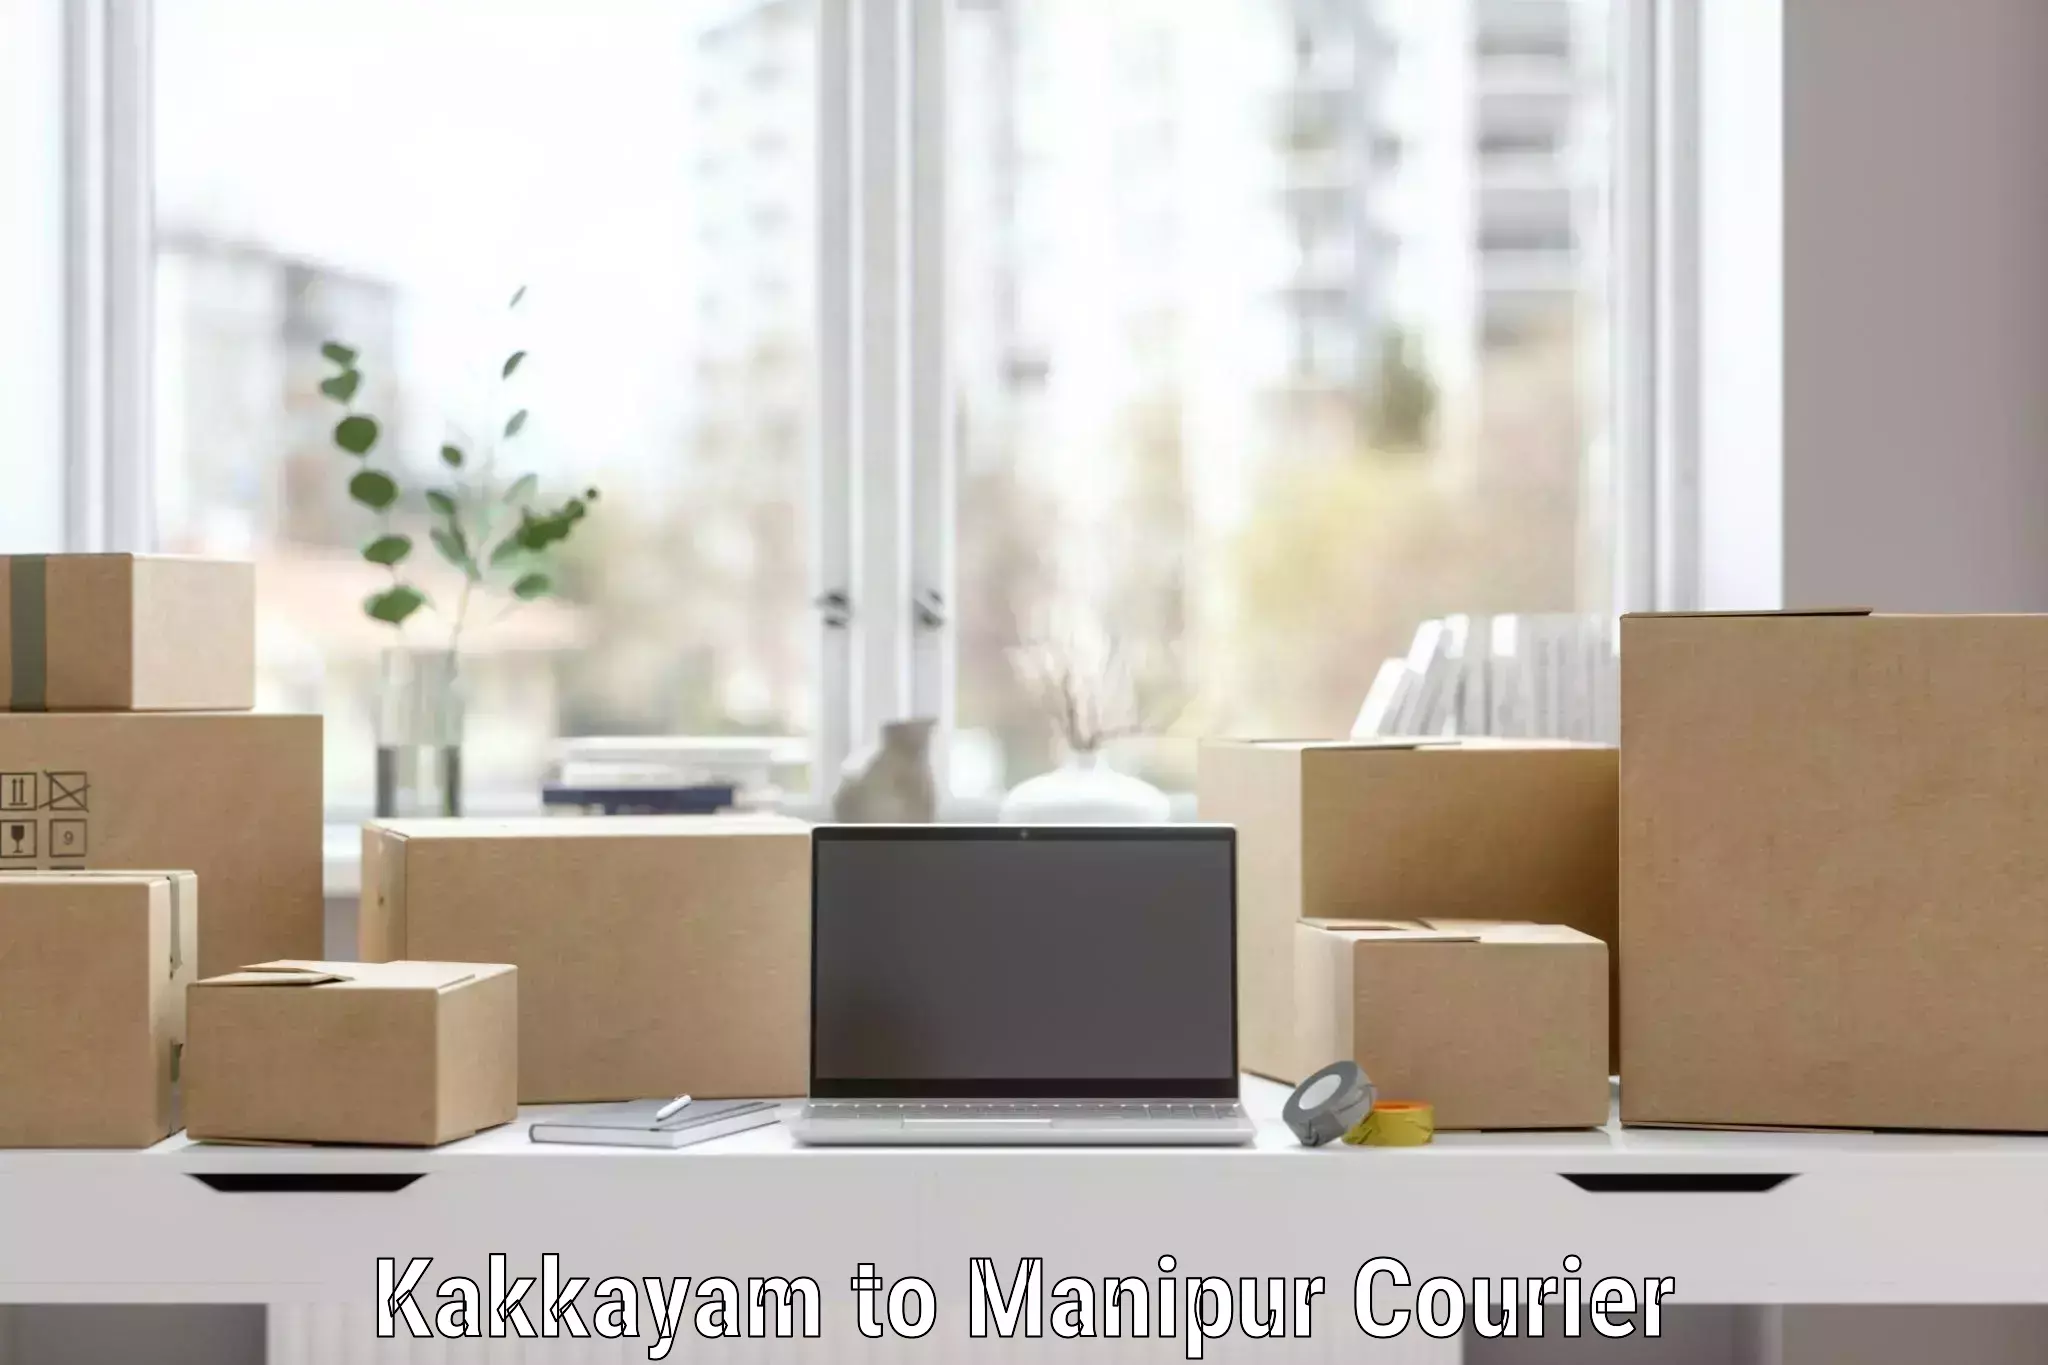 Professional furniture moving in Kakkayam to Tadubi